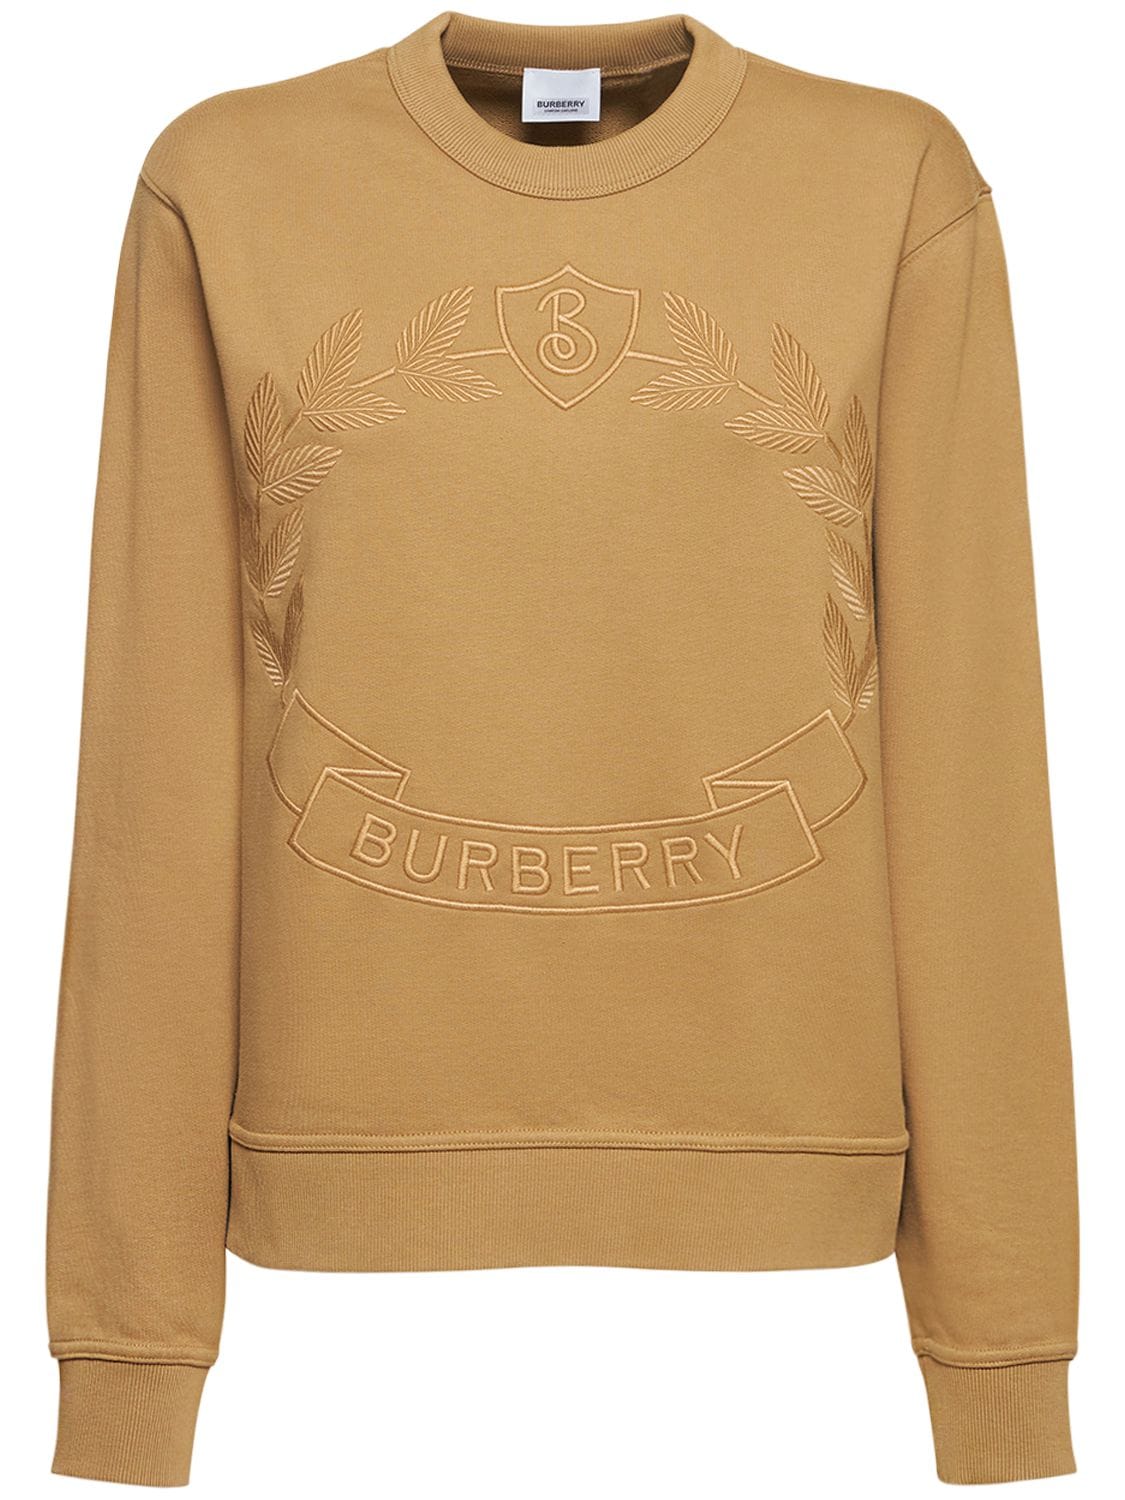 Burberry Adley Embroidered Crewneck Sweatshirt In Beige